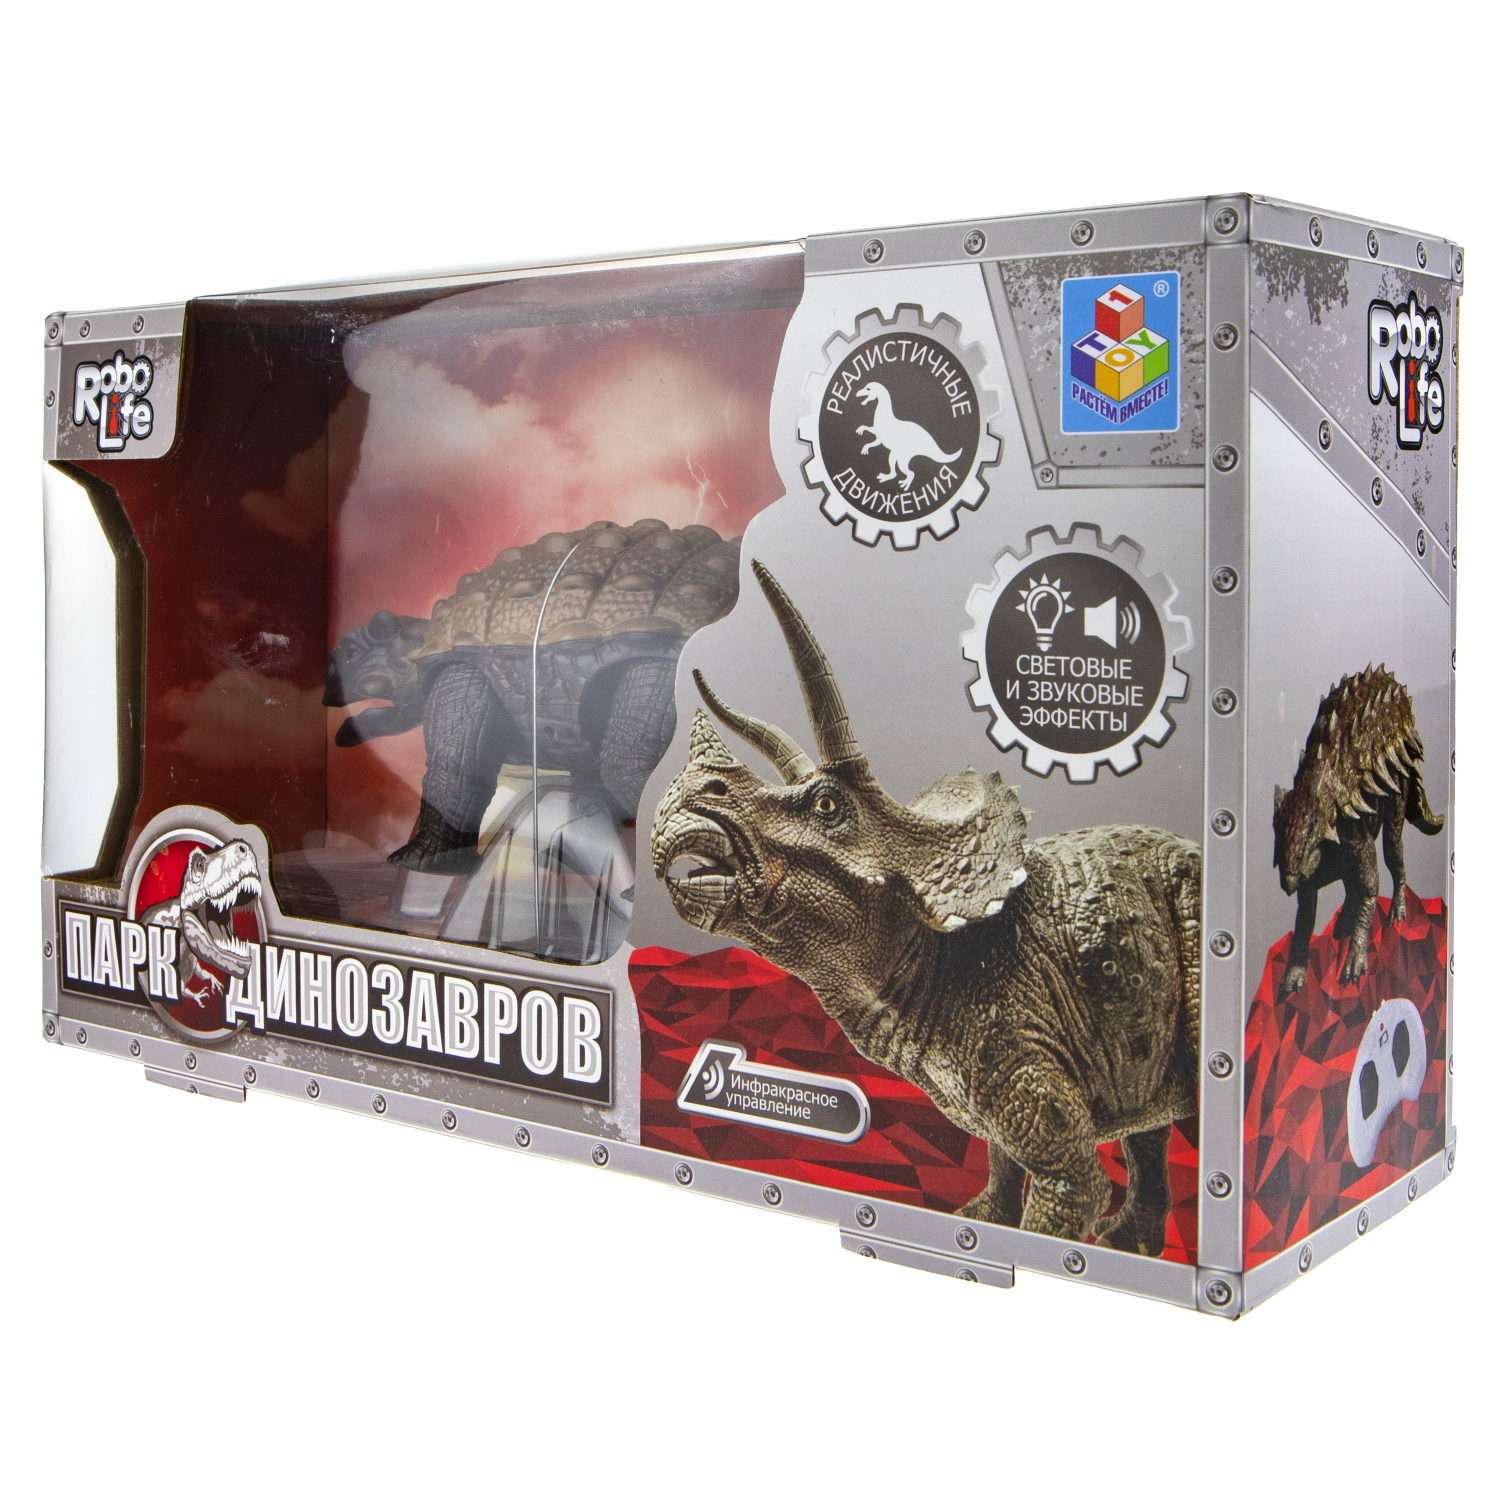 Интерактивная игрушка Robo Life Анкилозавр с пультом ДУ со звуковыми световыми и эффектами движения - фото 8